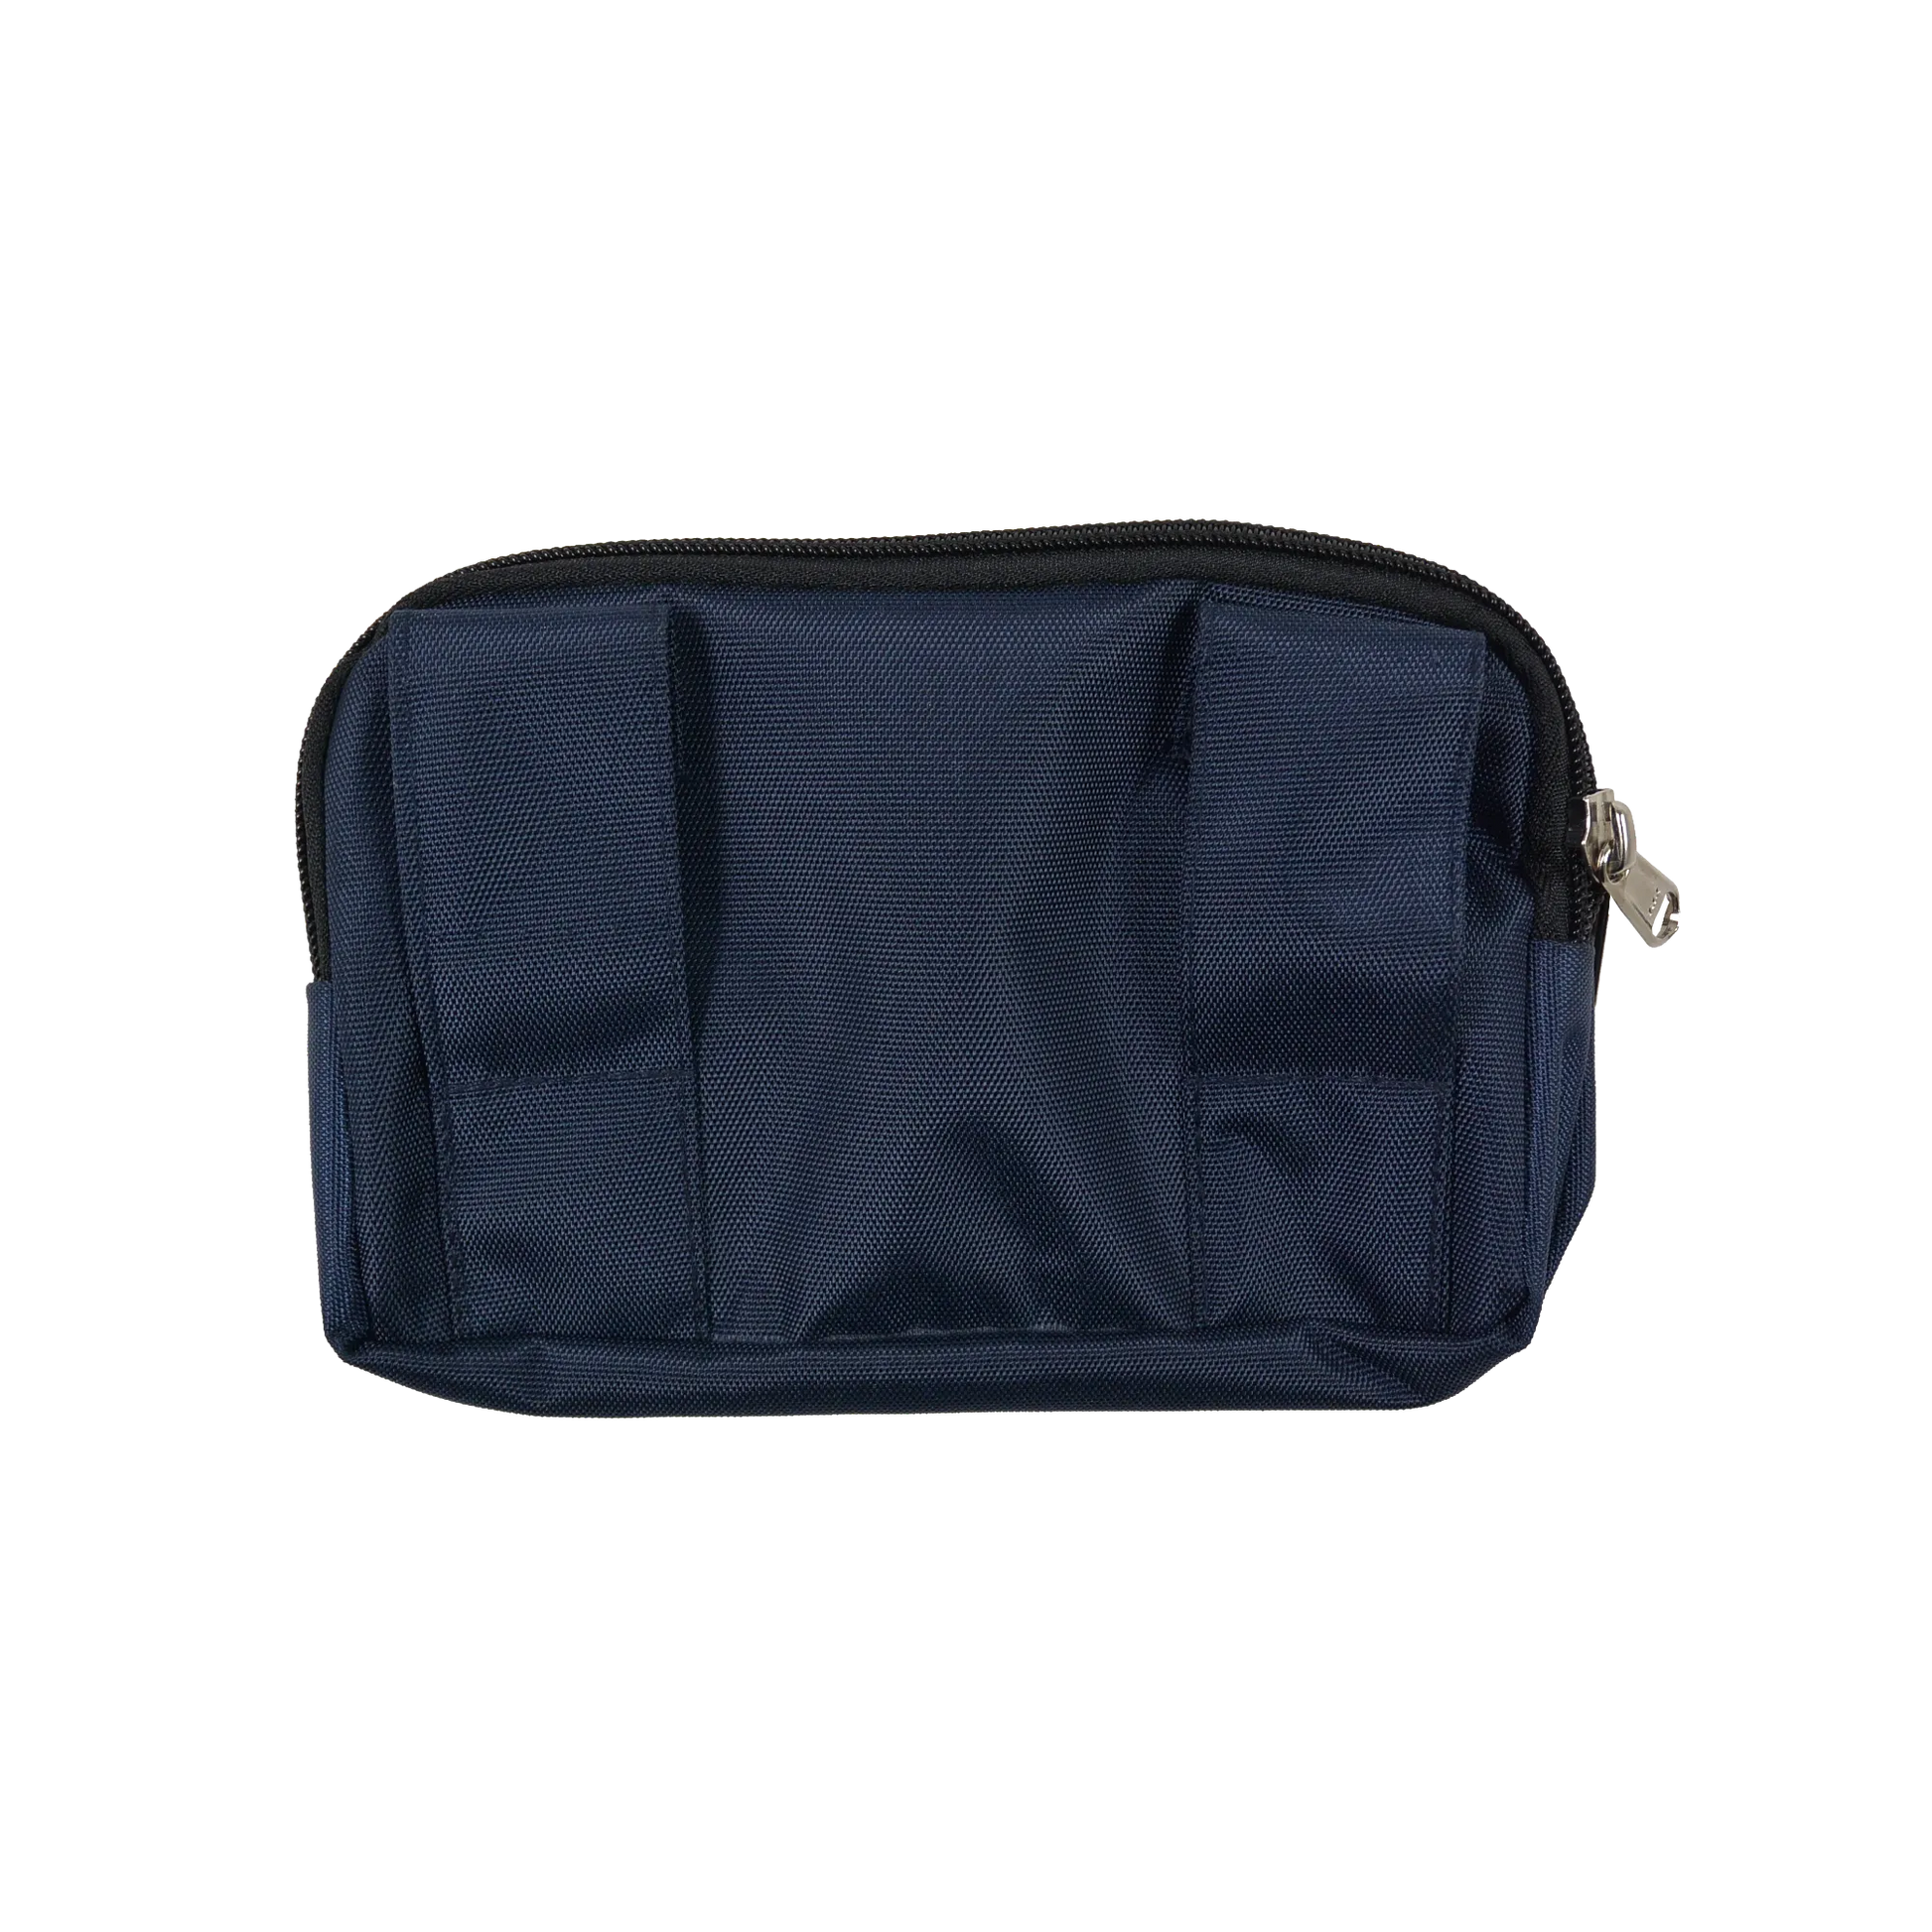 Beuteltasche aus wasserabweisendem Stoff, dunkelblau. Die Tasche besitzt Reisverschlussfächer und ein Einsteckfach vorne und kann mit zwei Gürtelschlaufen auf der Rückseite an jeden Gürtel angebracht werden.